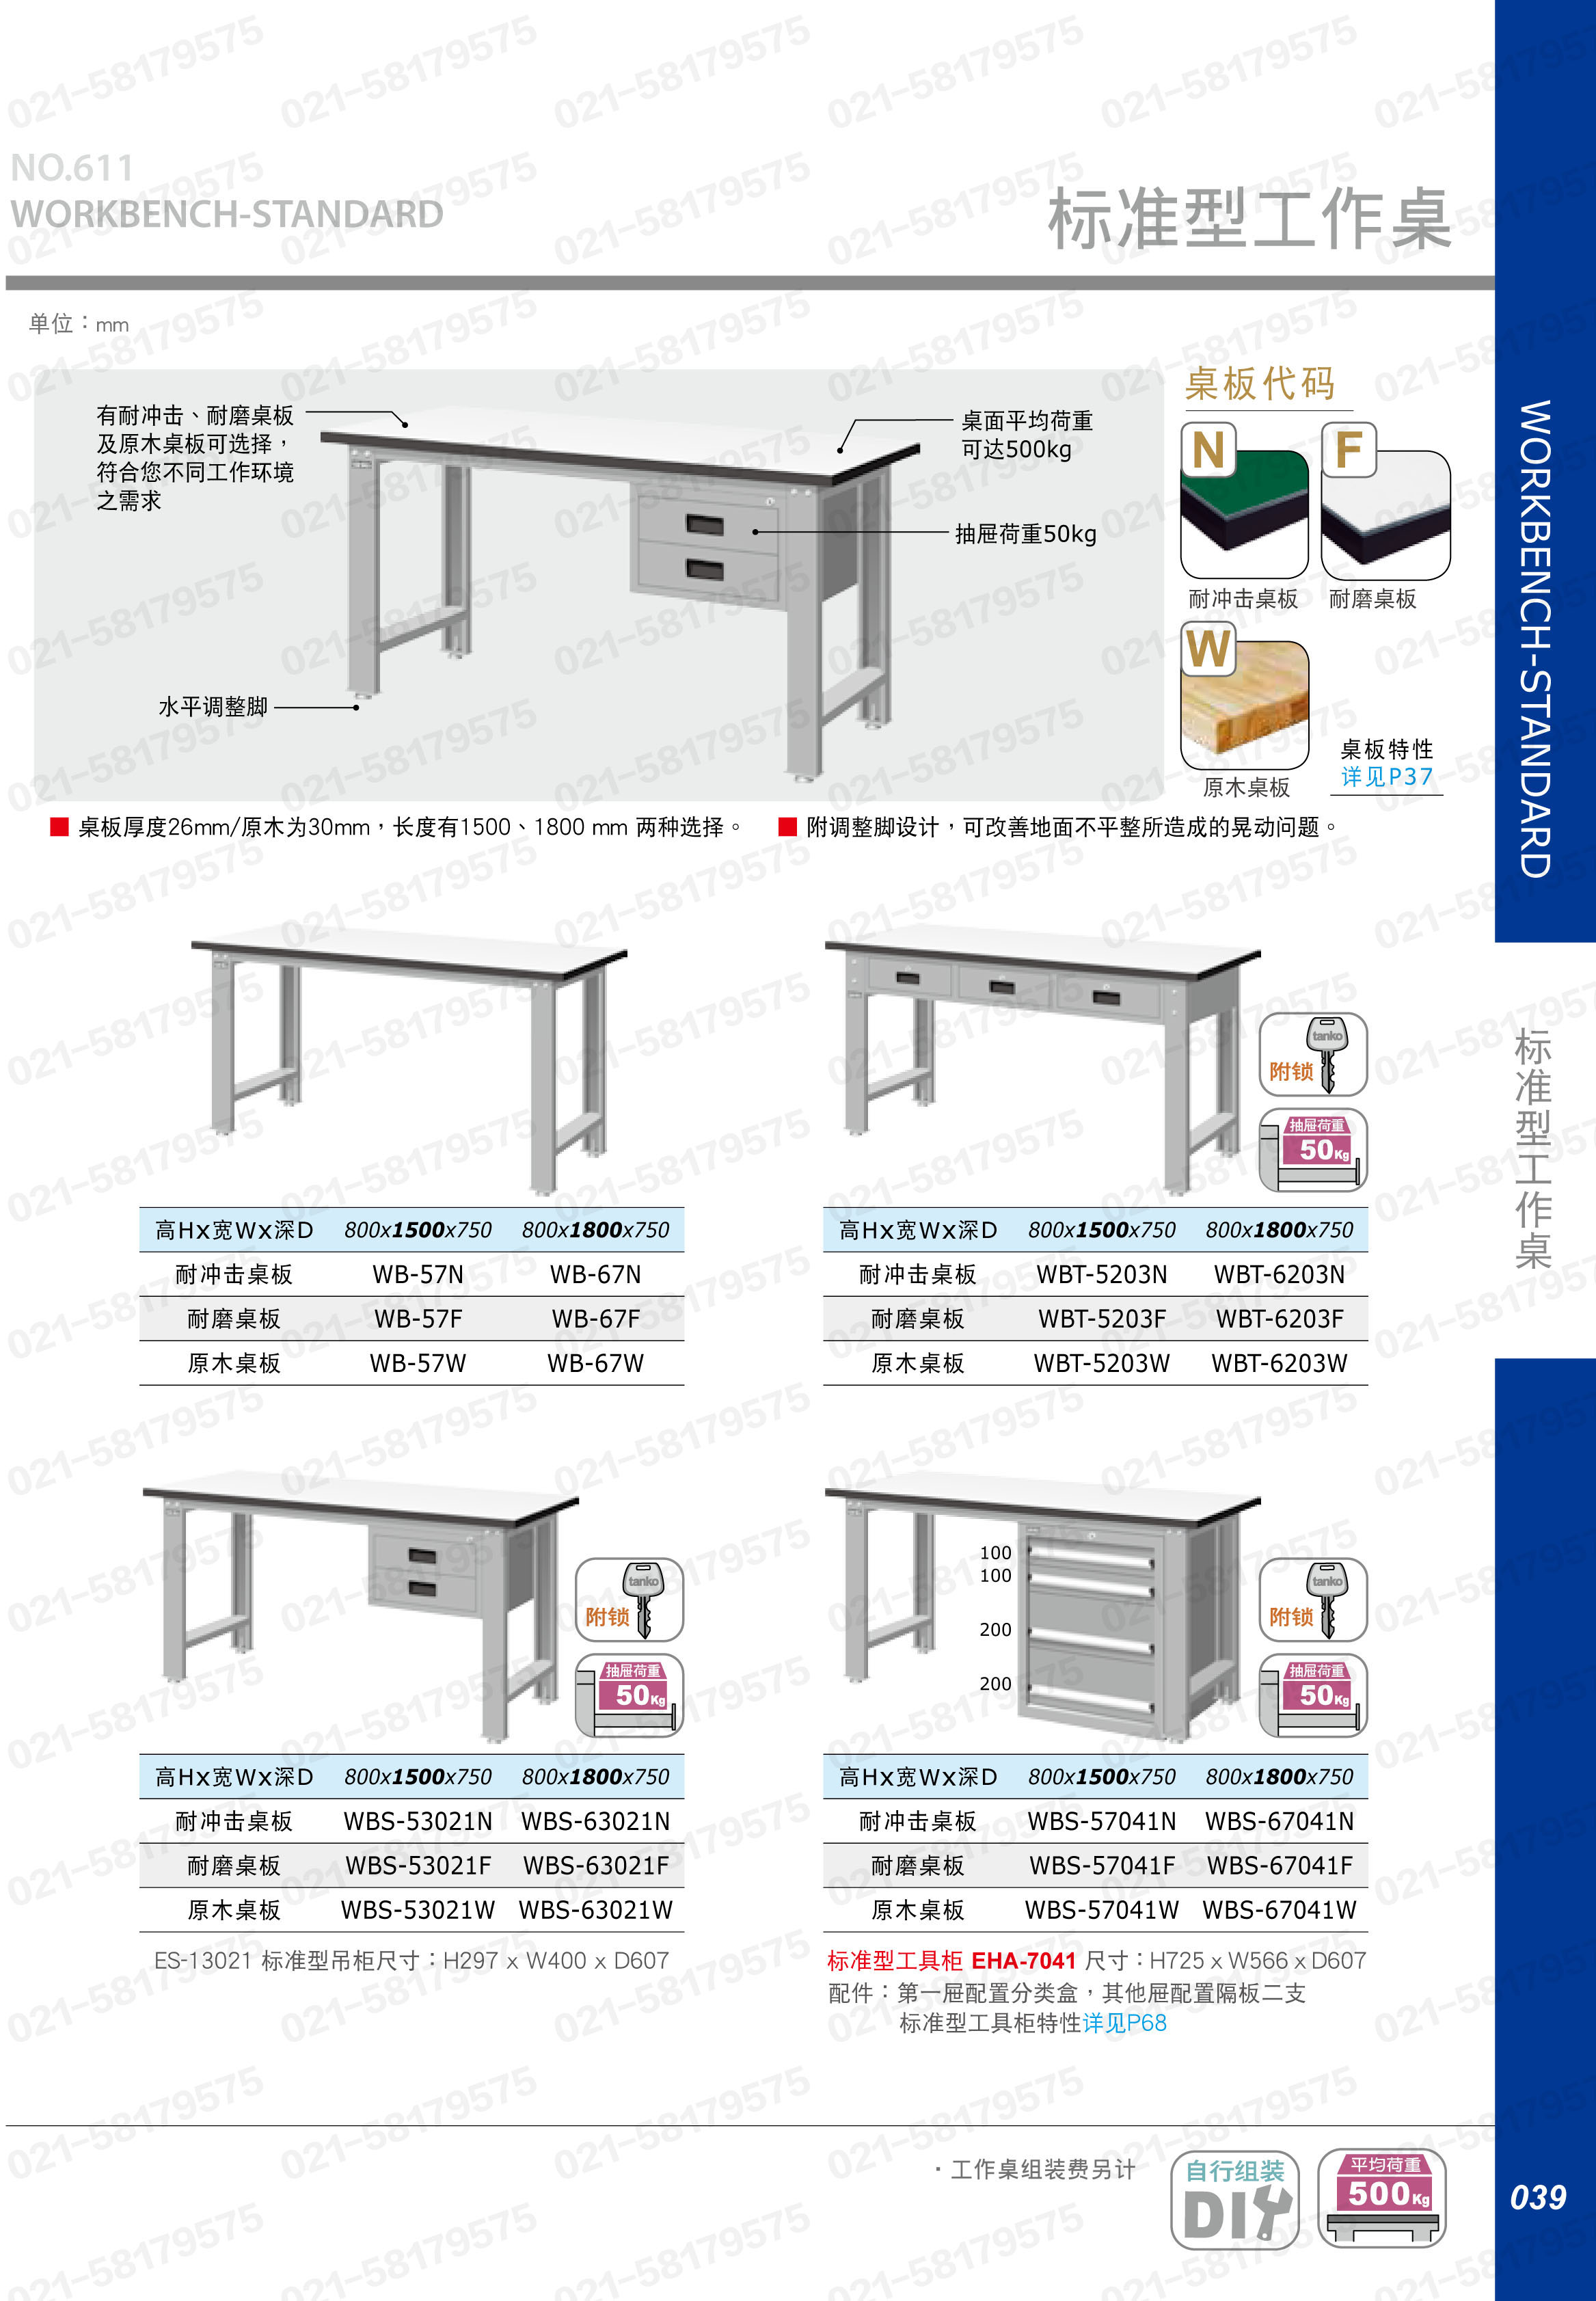 轻型工作桌1800×750×800mm 耐磨桌板 带双吊抽,WBS-63021F,5D2937